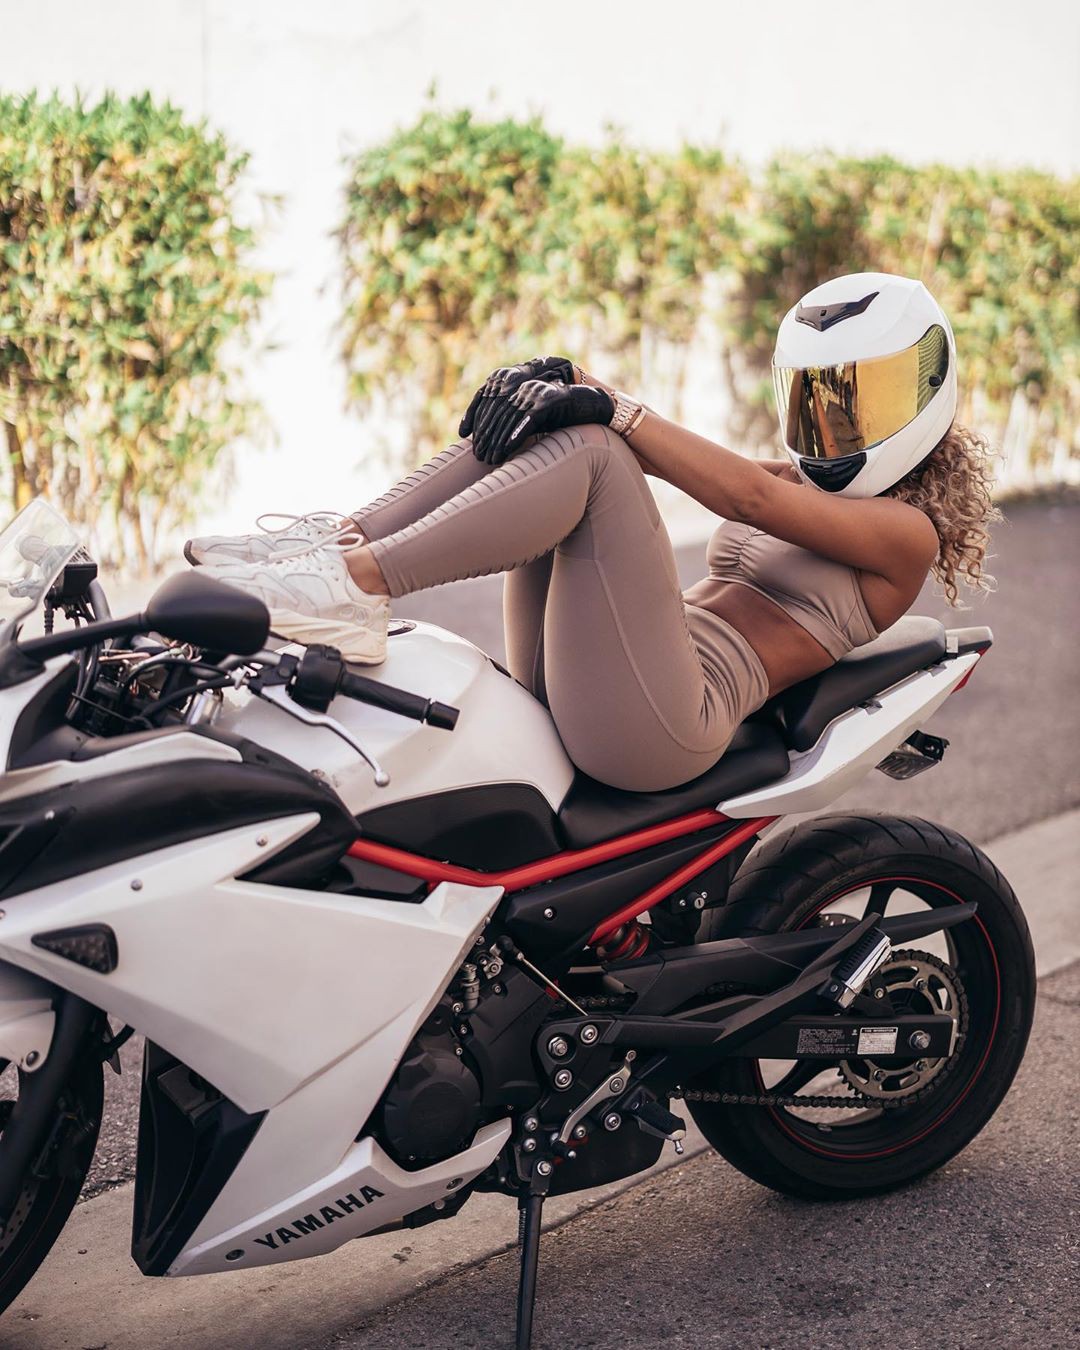 Jena Frumes, equipo de protección personal, casco de moto, diseño automotriz: chicas de instagram  